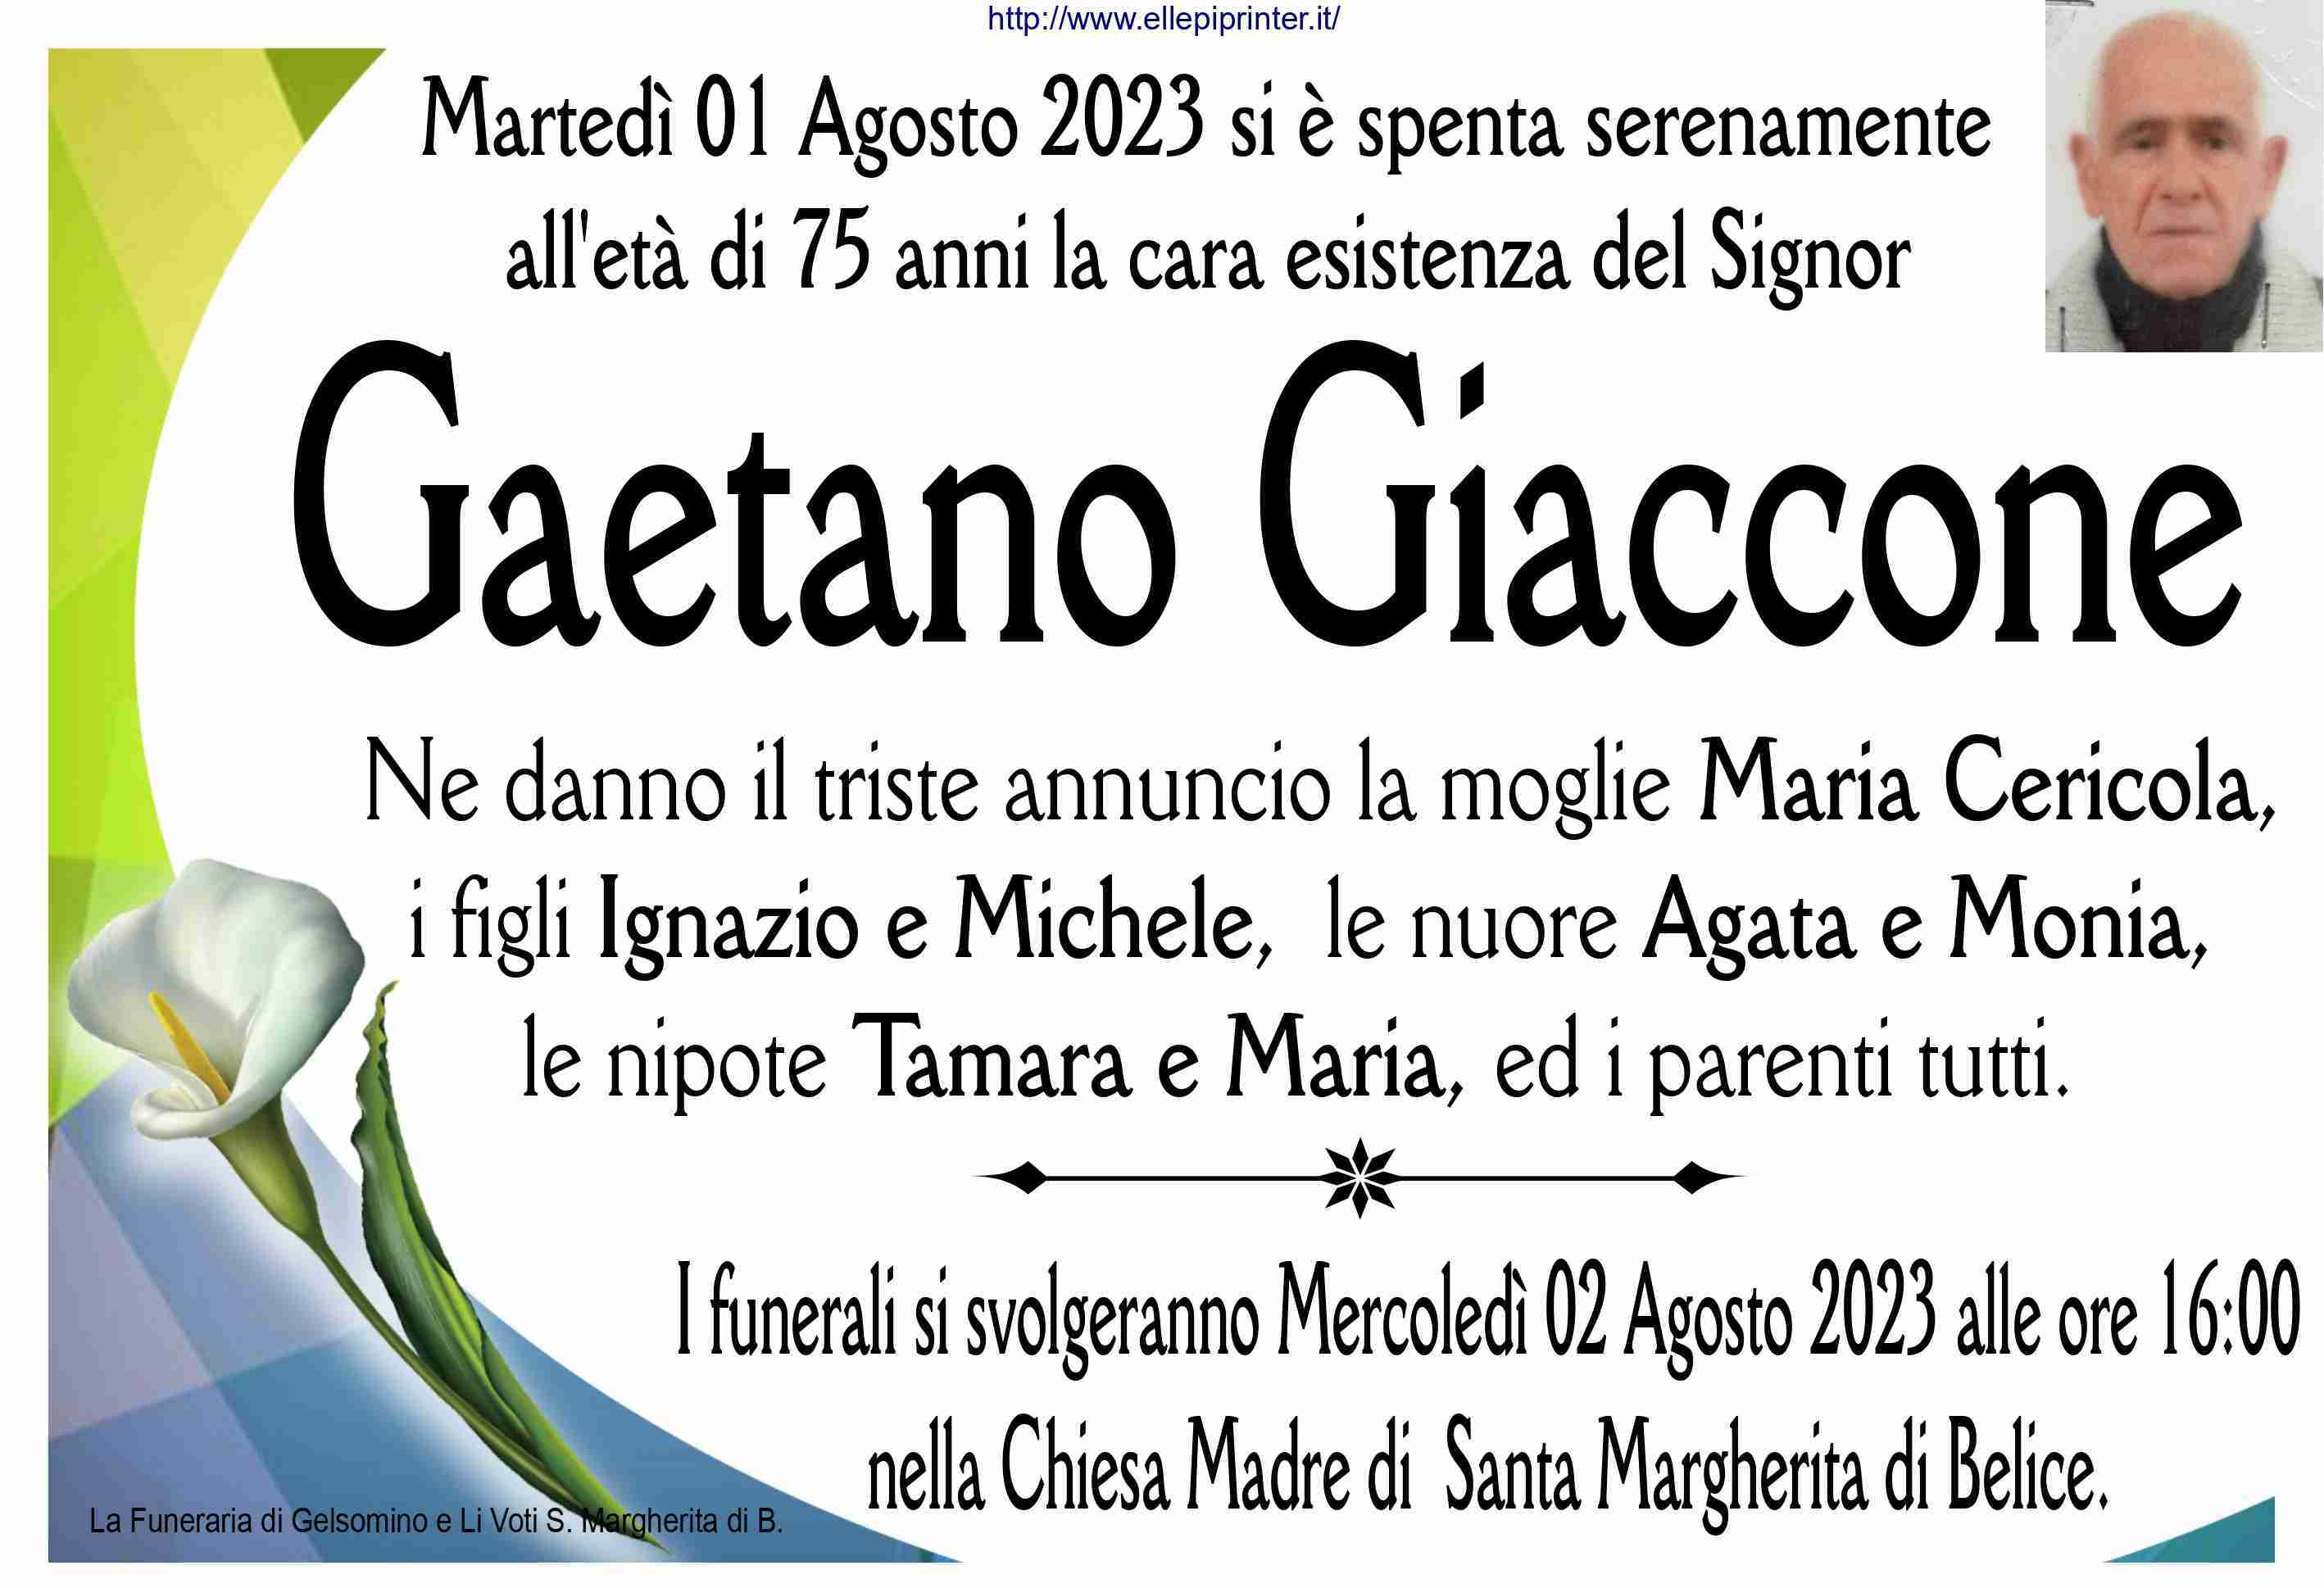 Gaetano Giaccone